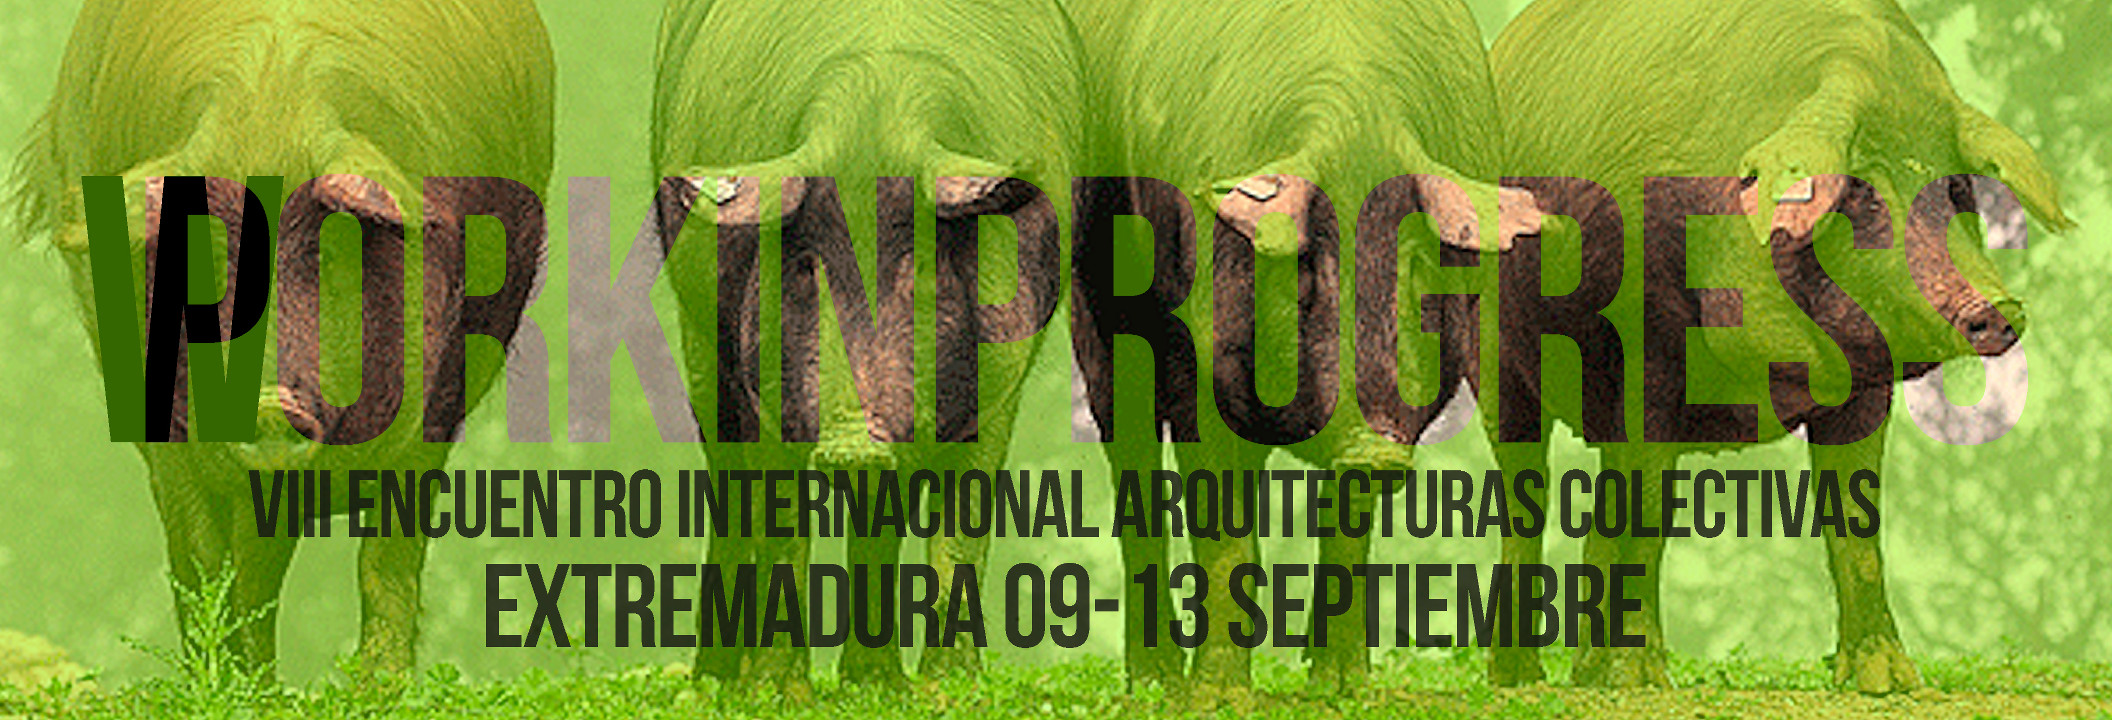 8th Arquitecturas Colectivas International Meeting in Extremadura